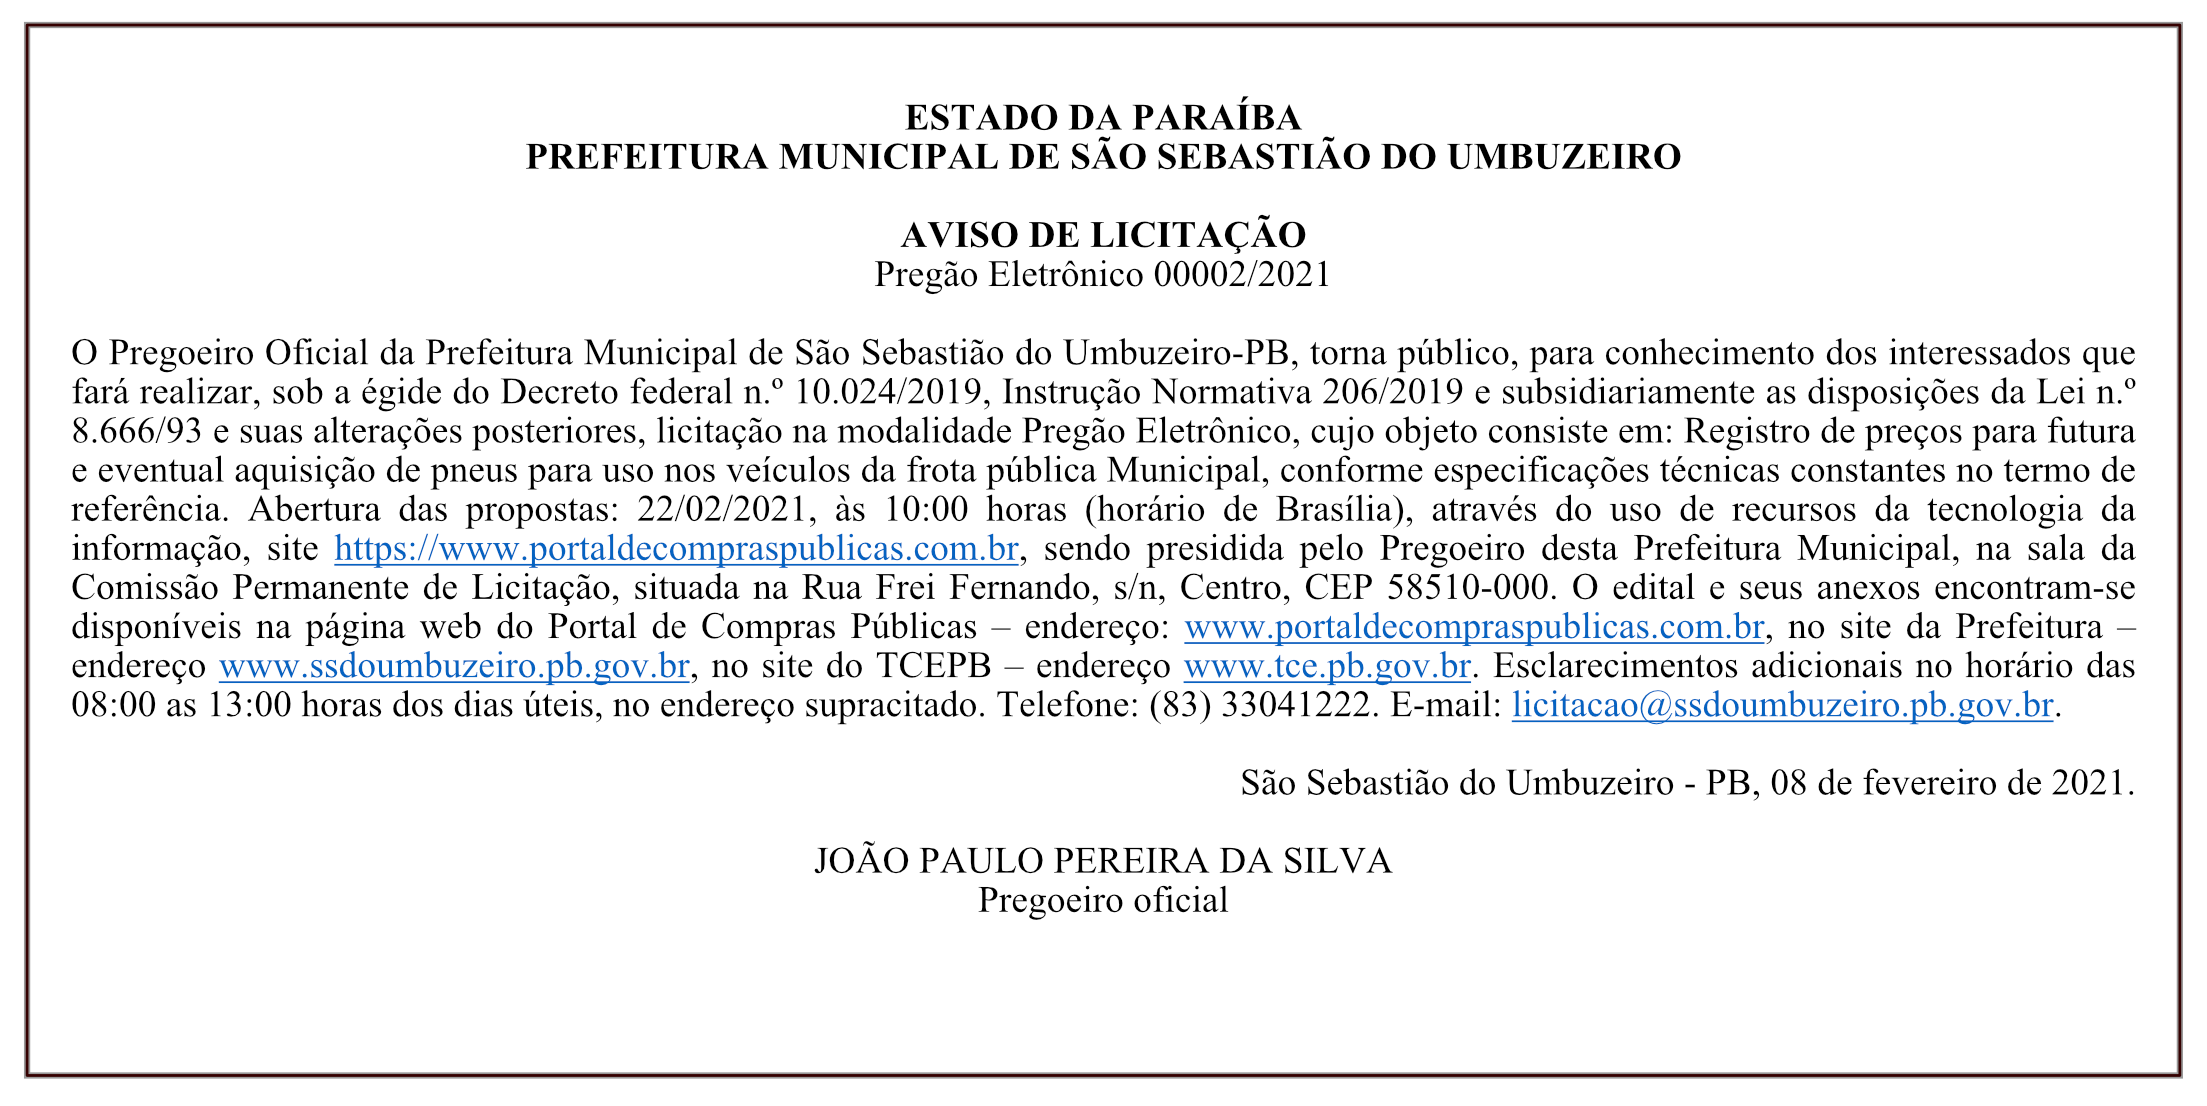 PREFEITURA MUNICIPAL DE SÃO SEBASTIÃO DO UMBUZEIRO – AVISO DE LICITAÇÃO – PREGÃO ELETRÔNICO 00002/2021